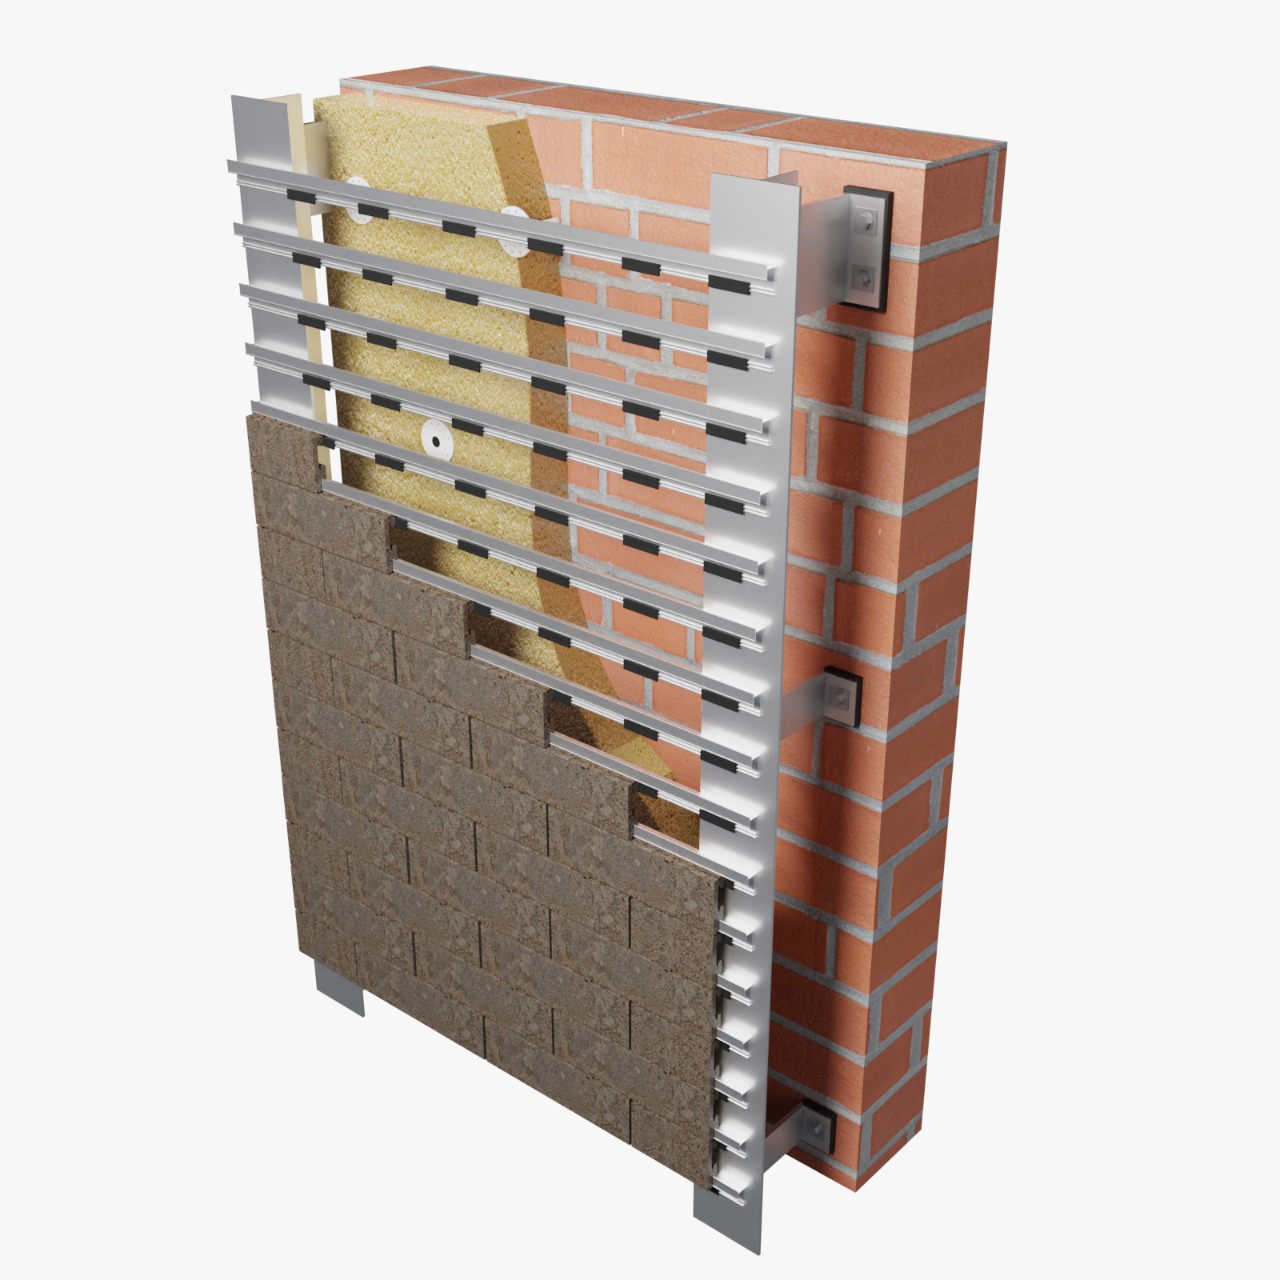 Фасадные системы  и подсистемы - КТС-1А для клинкерной и бетонной плитки